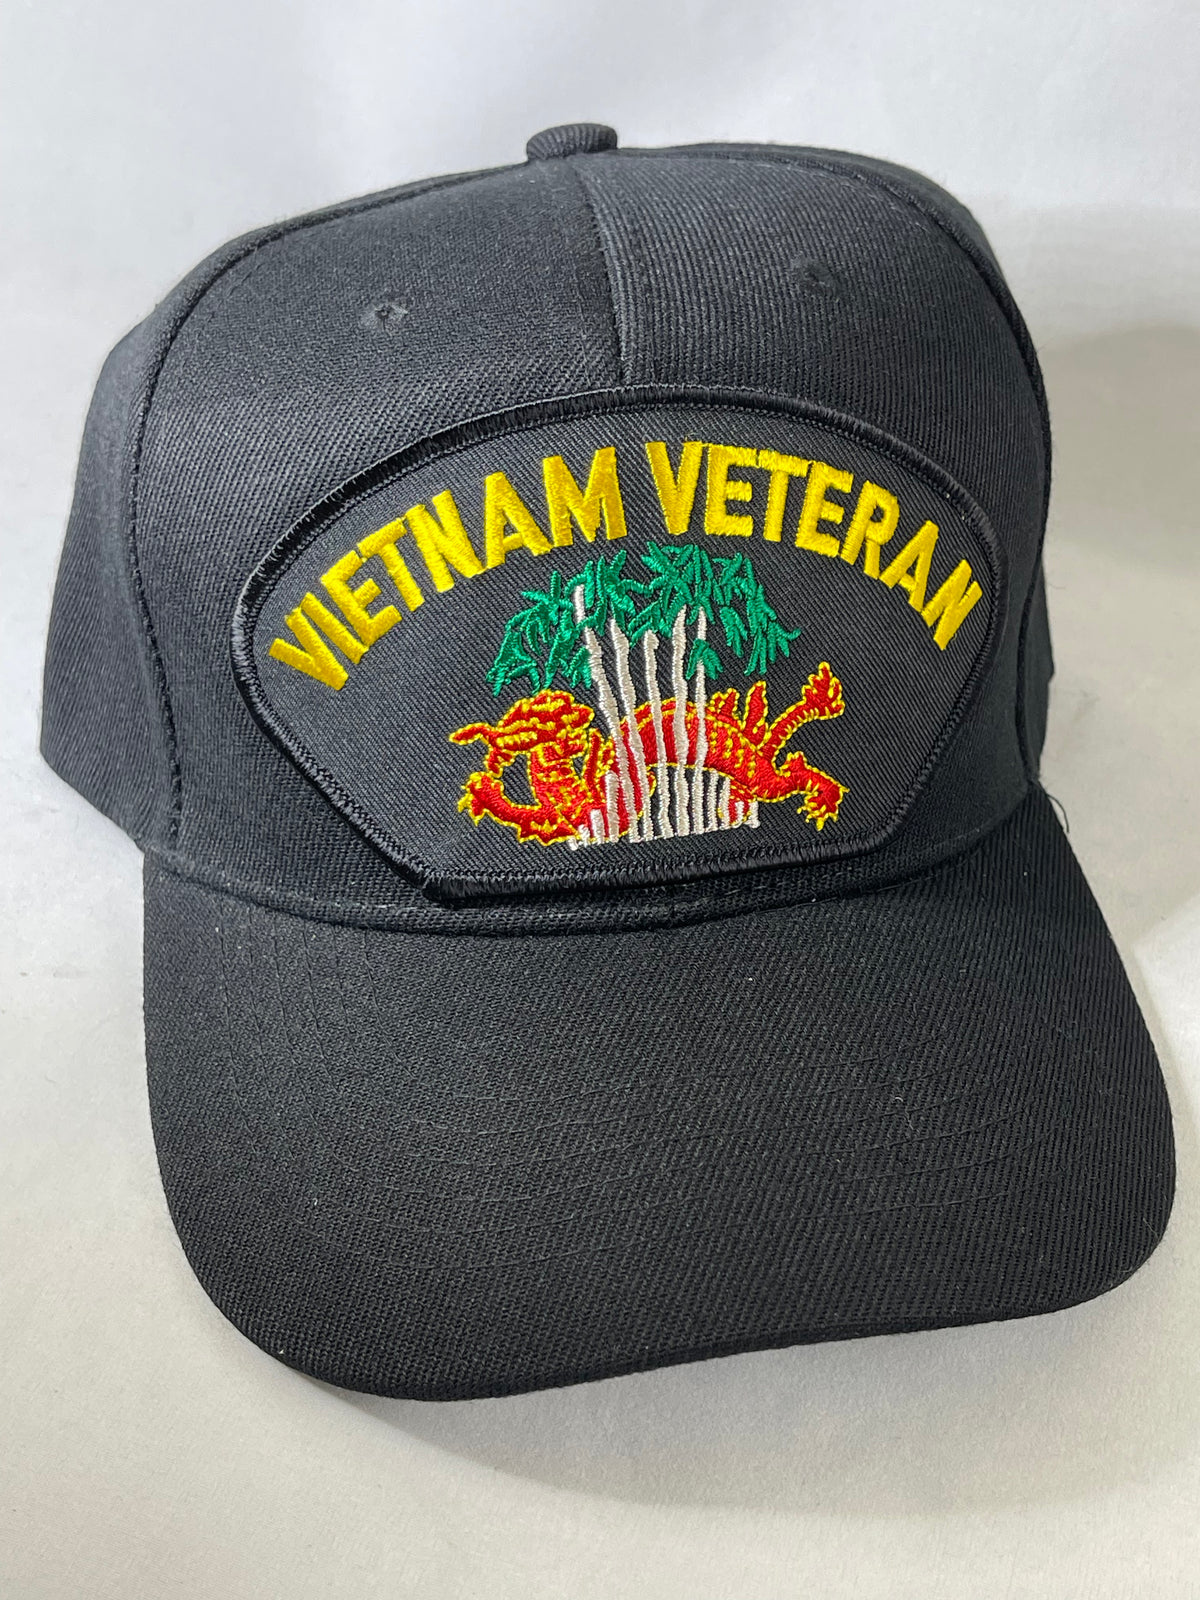 Cap Vietnam Veteran